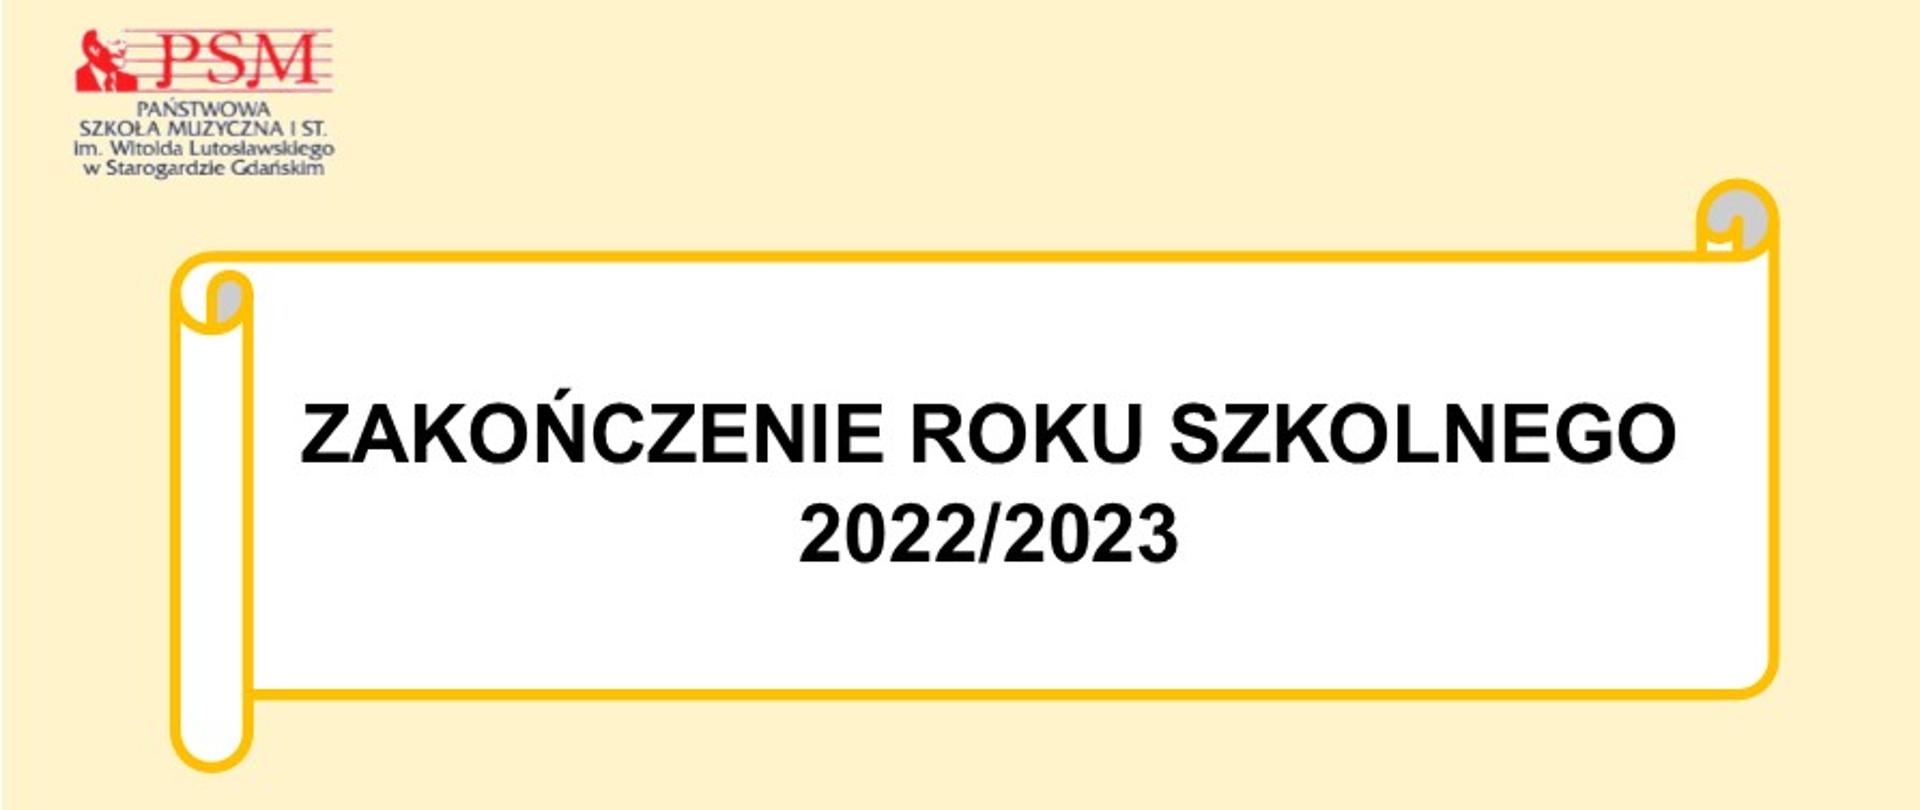 Baner w kolorze jasnożółtym z logotypem szkolnym (górny prawy róg). Po środku znajduje się grafika zwoju poziomego z napisem "zakończenie roku szkolnego 2022/2023"